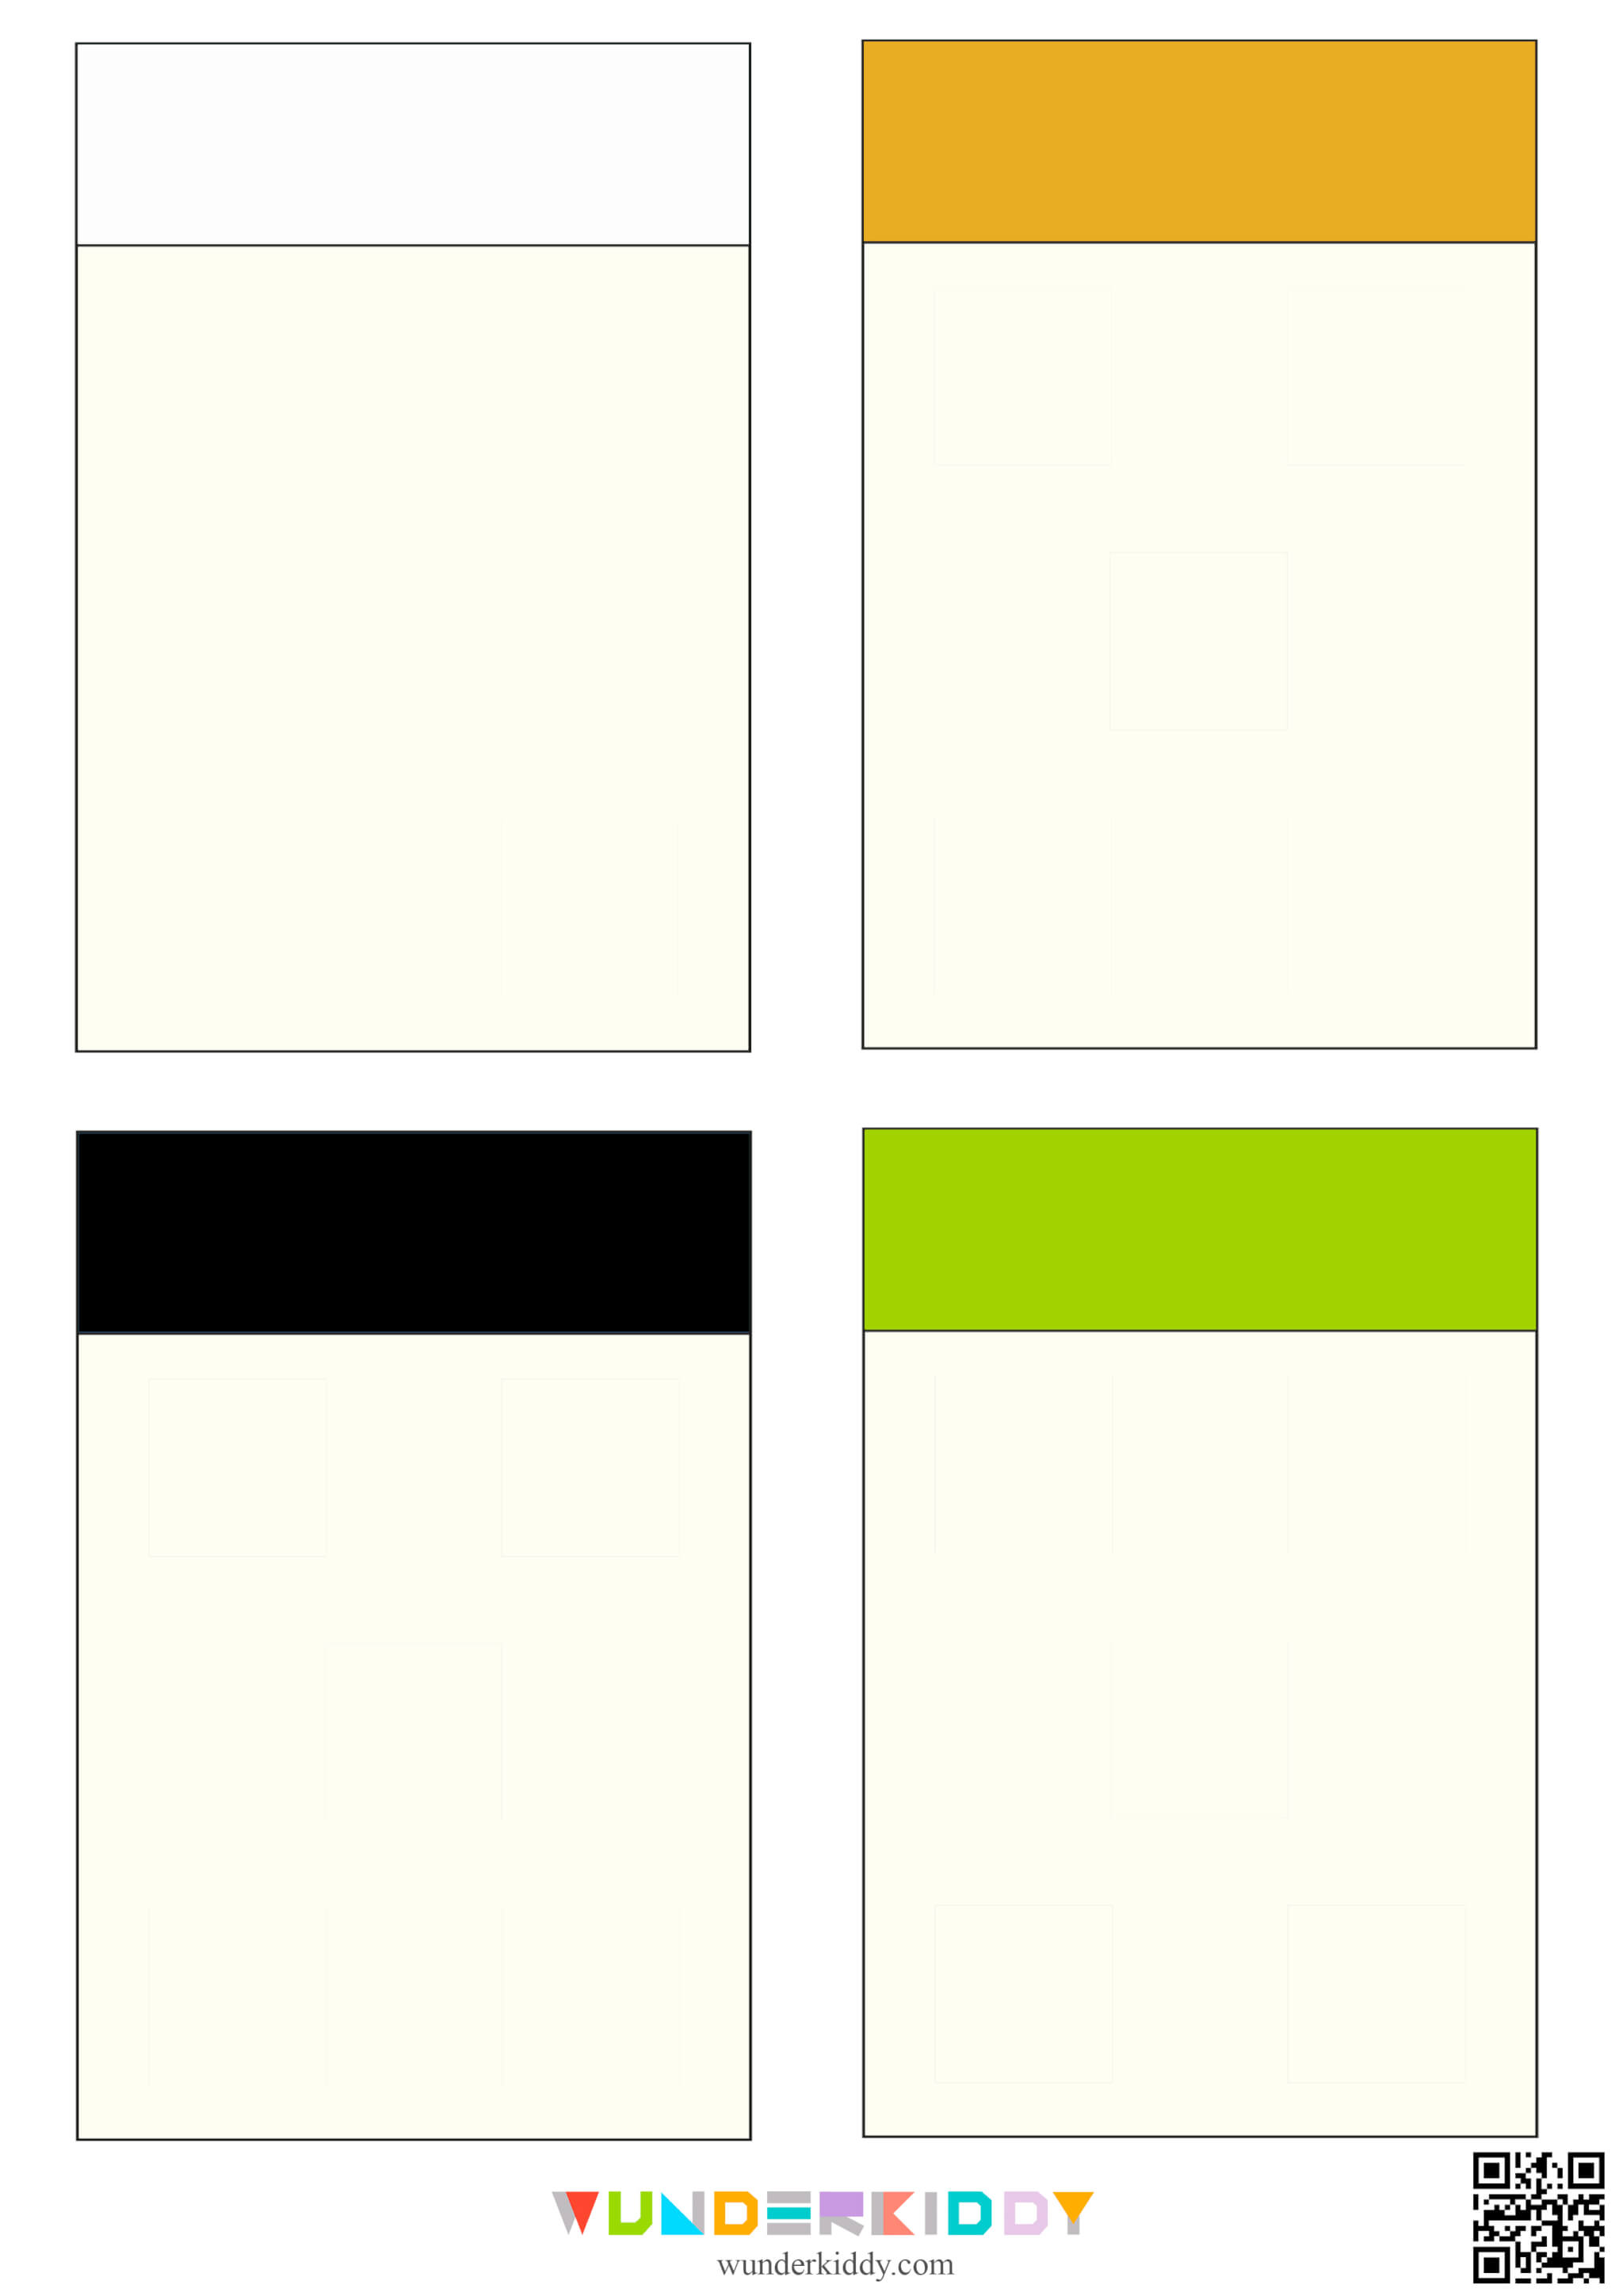 Color Sorting Worksheet for Kids - Image 5